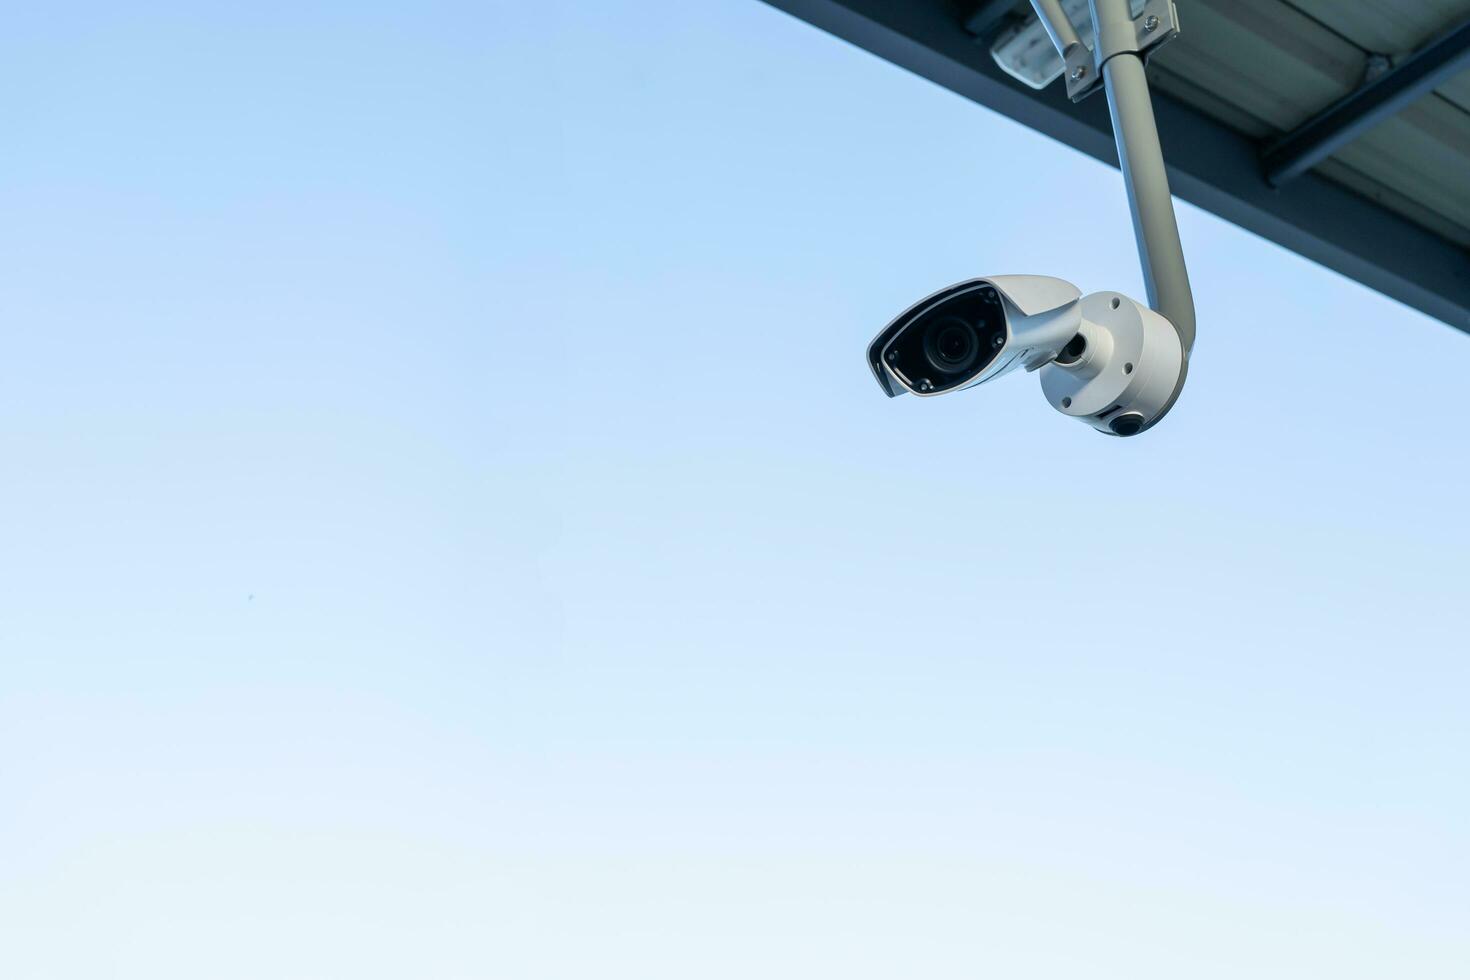 equipo de video de cámaras de seguridad de vigilancia cctv en poste control de área de sistema de seguridad de edificios al aire libre y espacio de copia. protección contra robo de cámara inteligente. foto